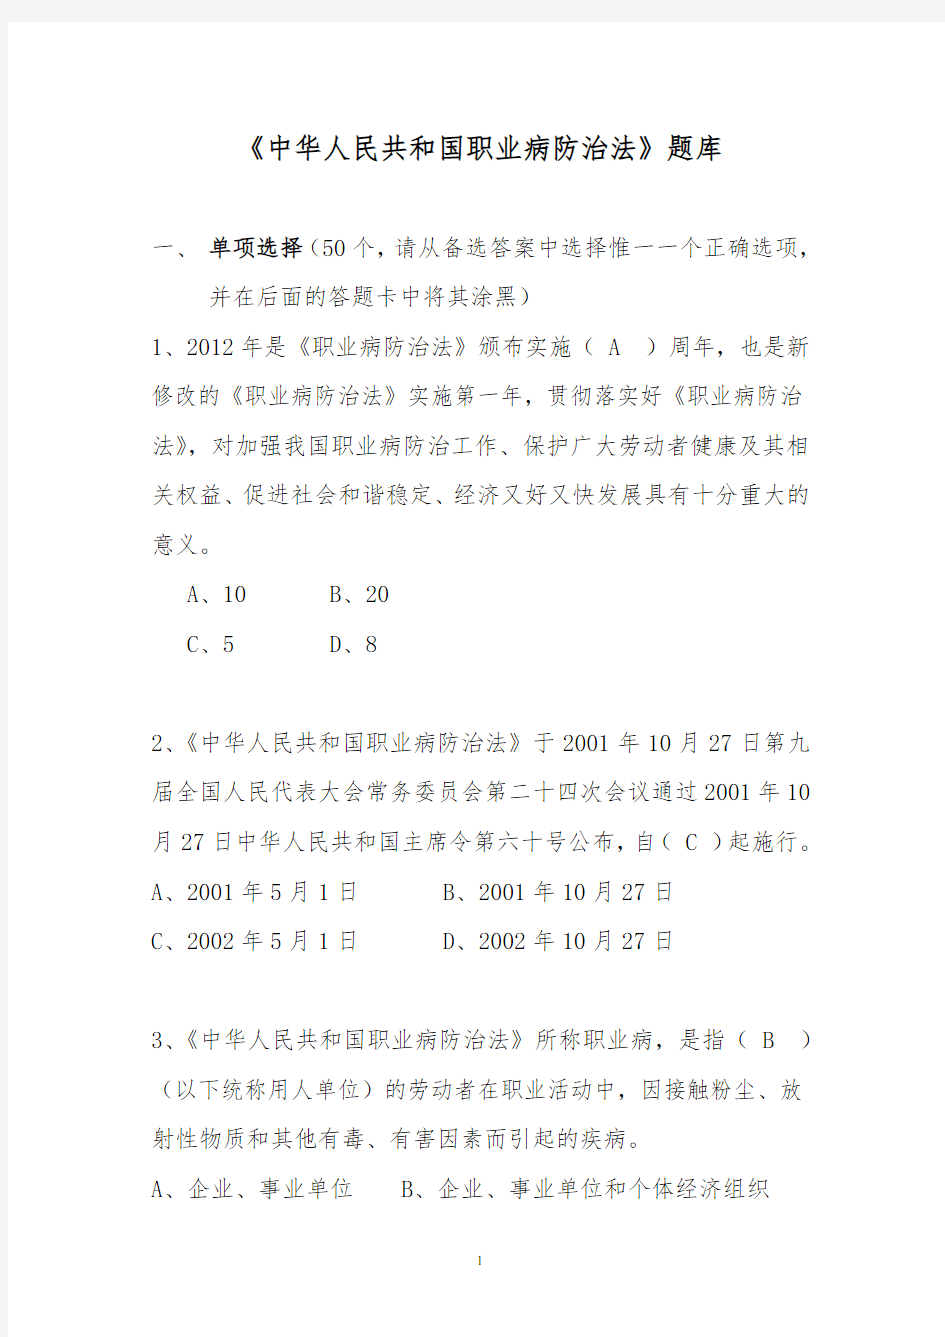 (完整版)中华人民共和国职业病防治法题库